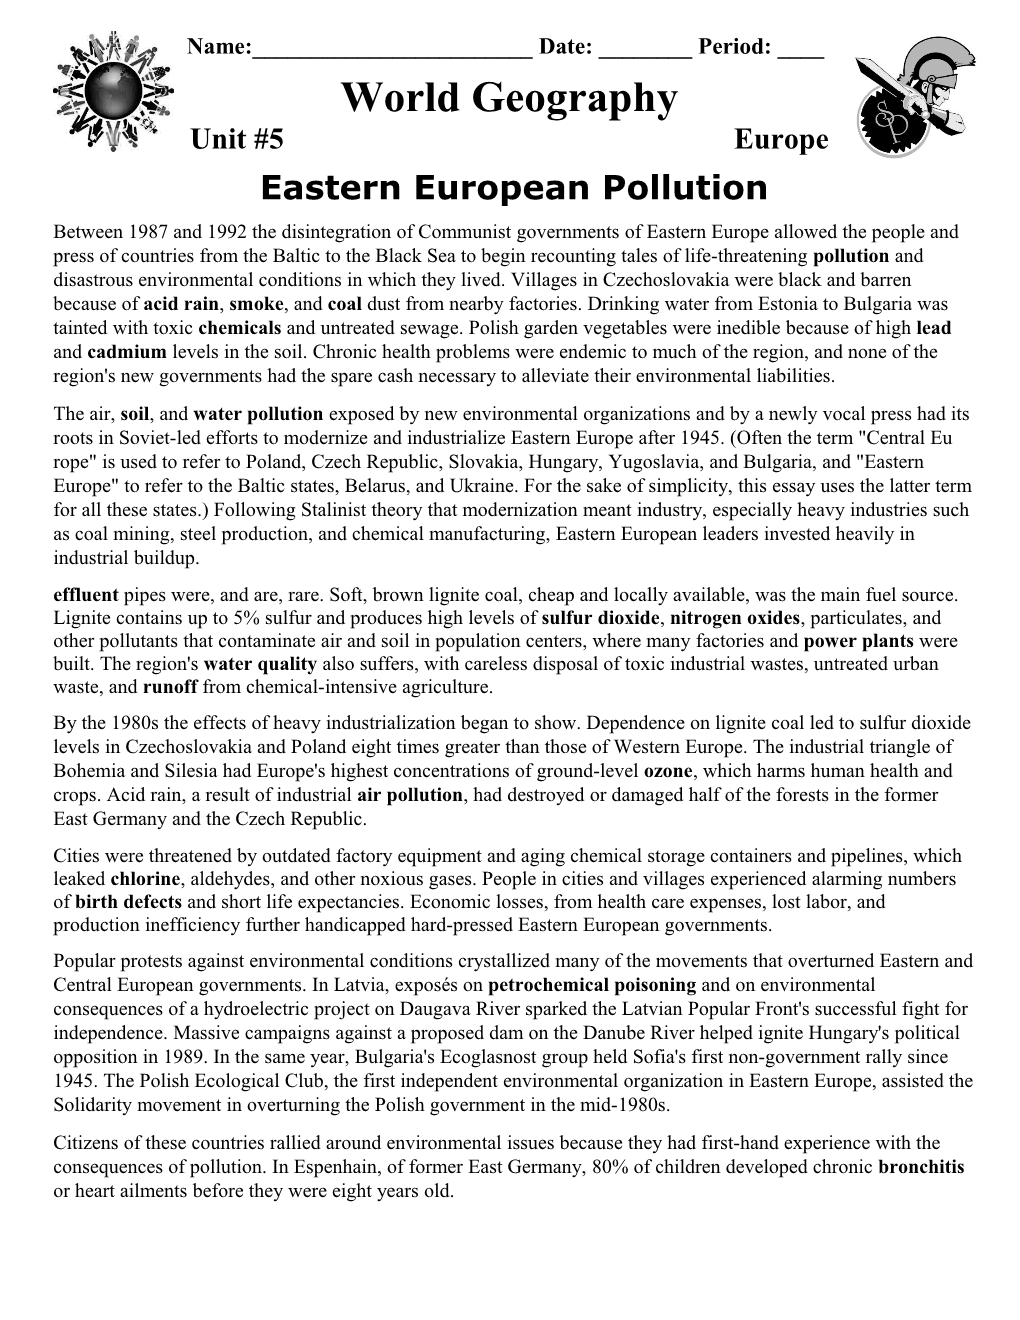 Eastern European Pollution